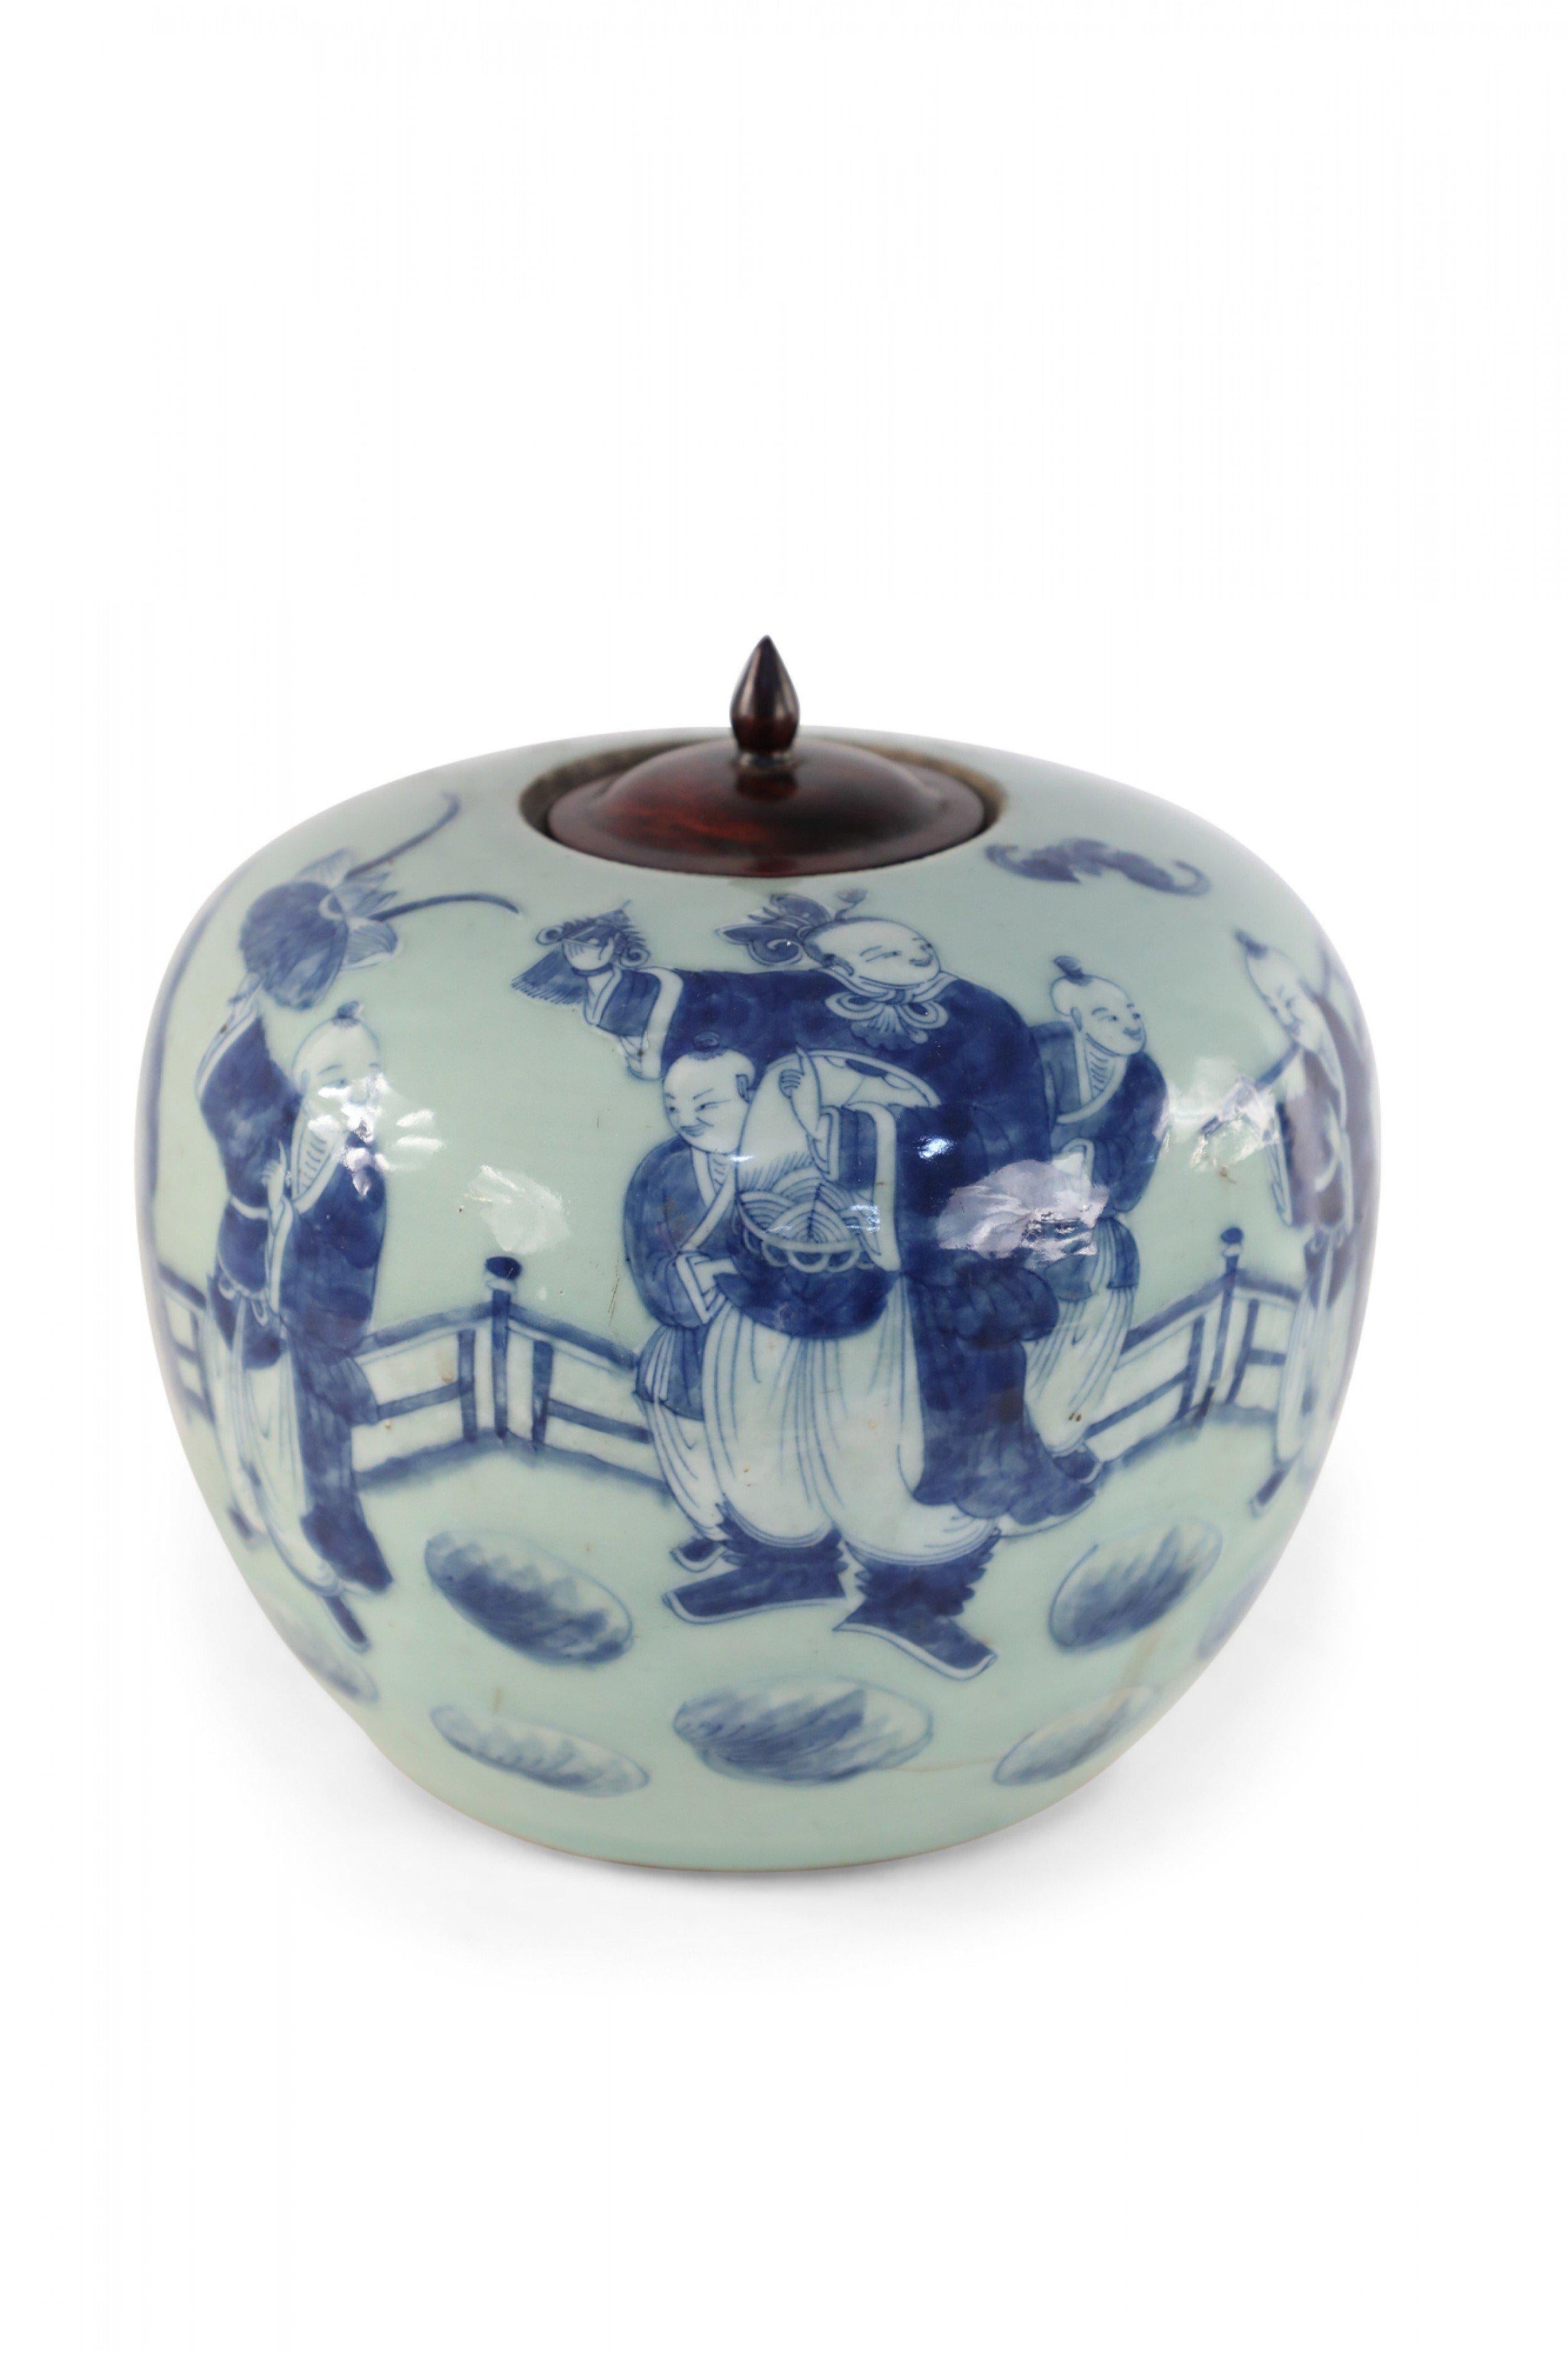 Chinese Celadon and Blue Figurative Lidded Porcelain Ginger Jar 3